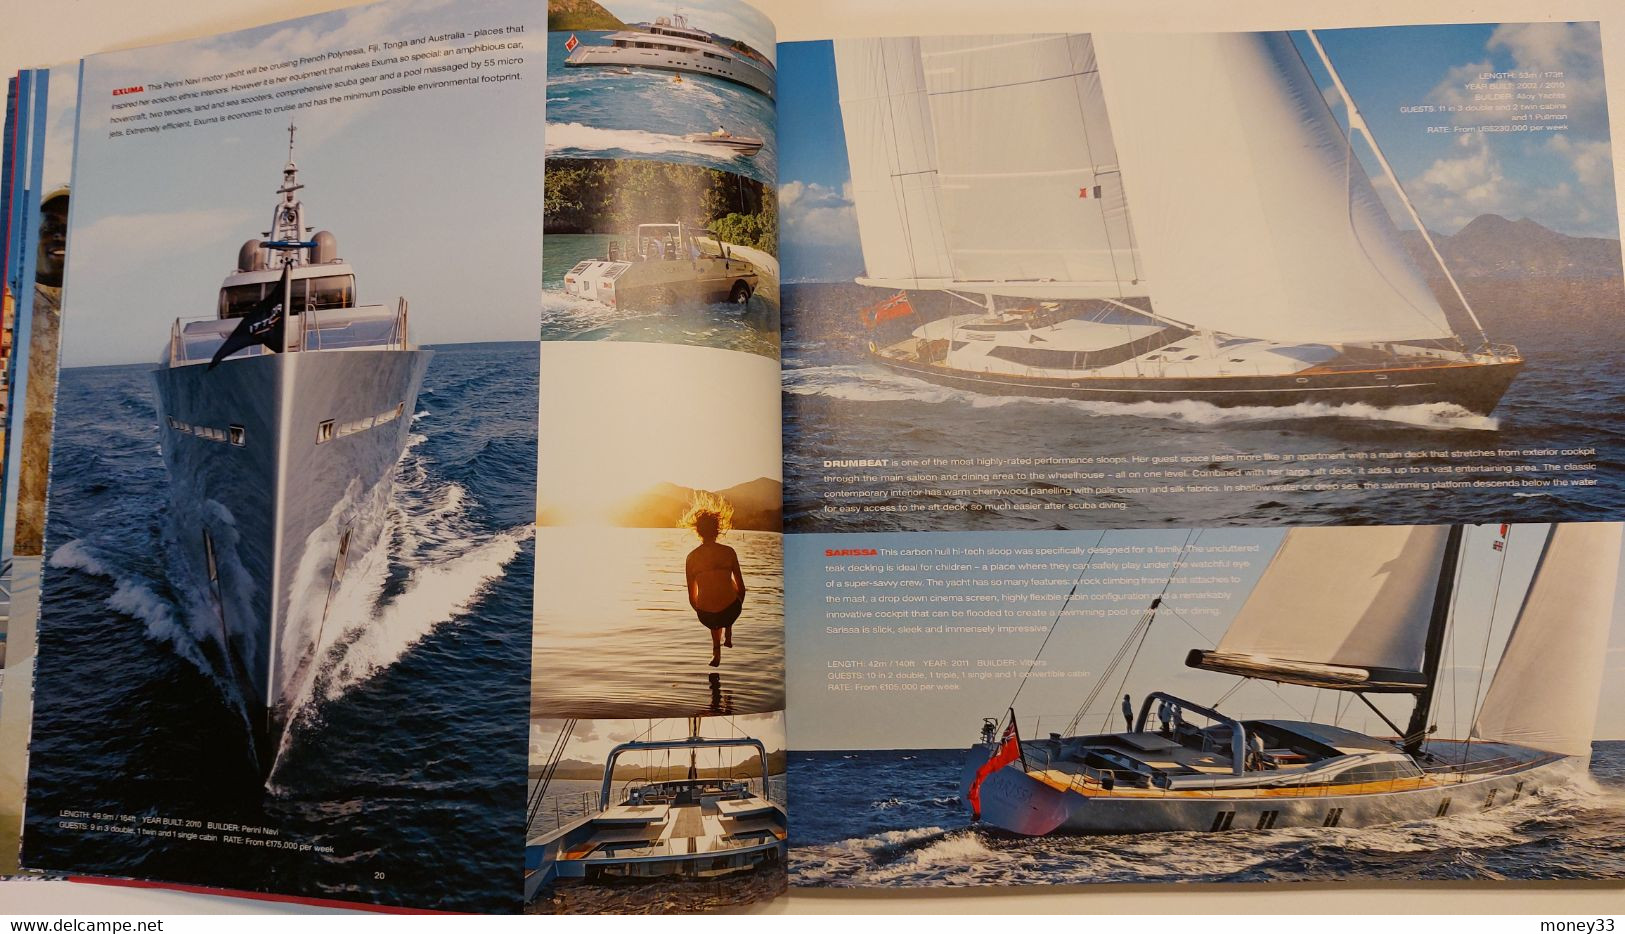 Catalogue de location de yachts par la société " Edminston "